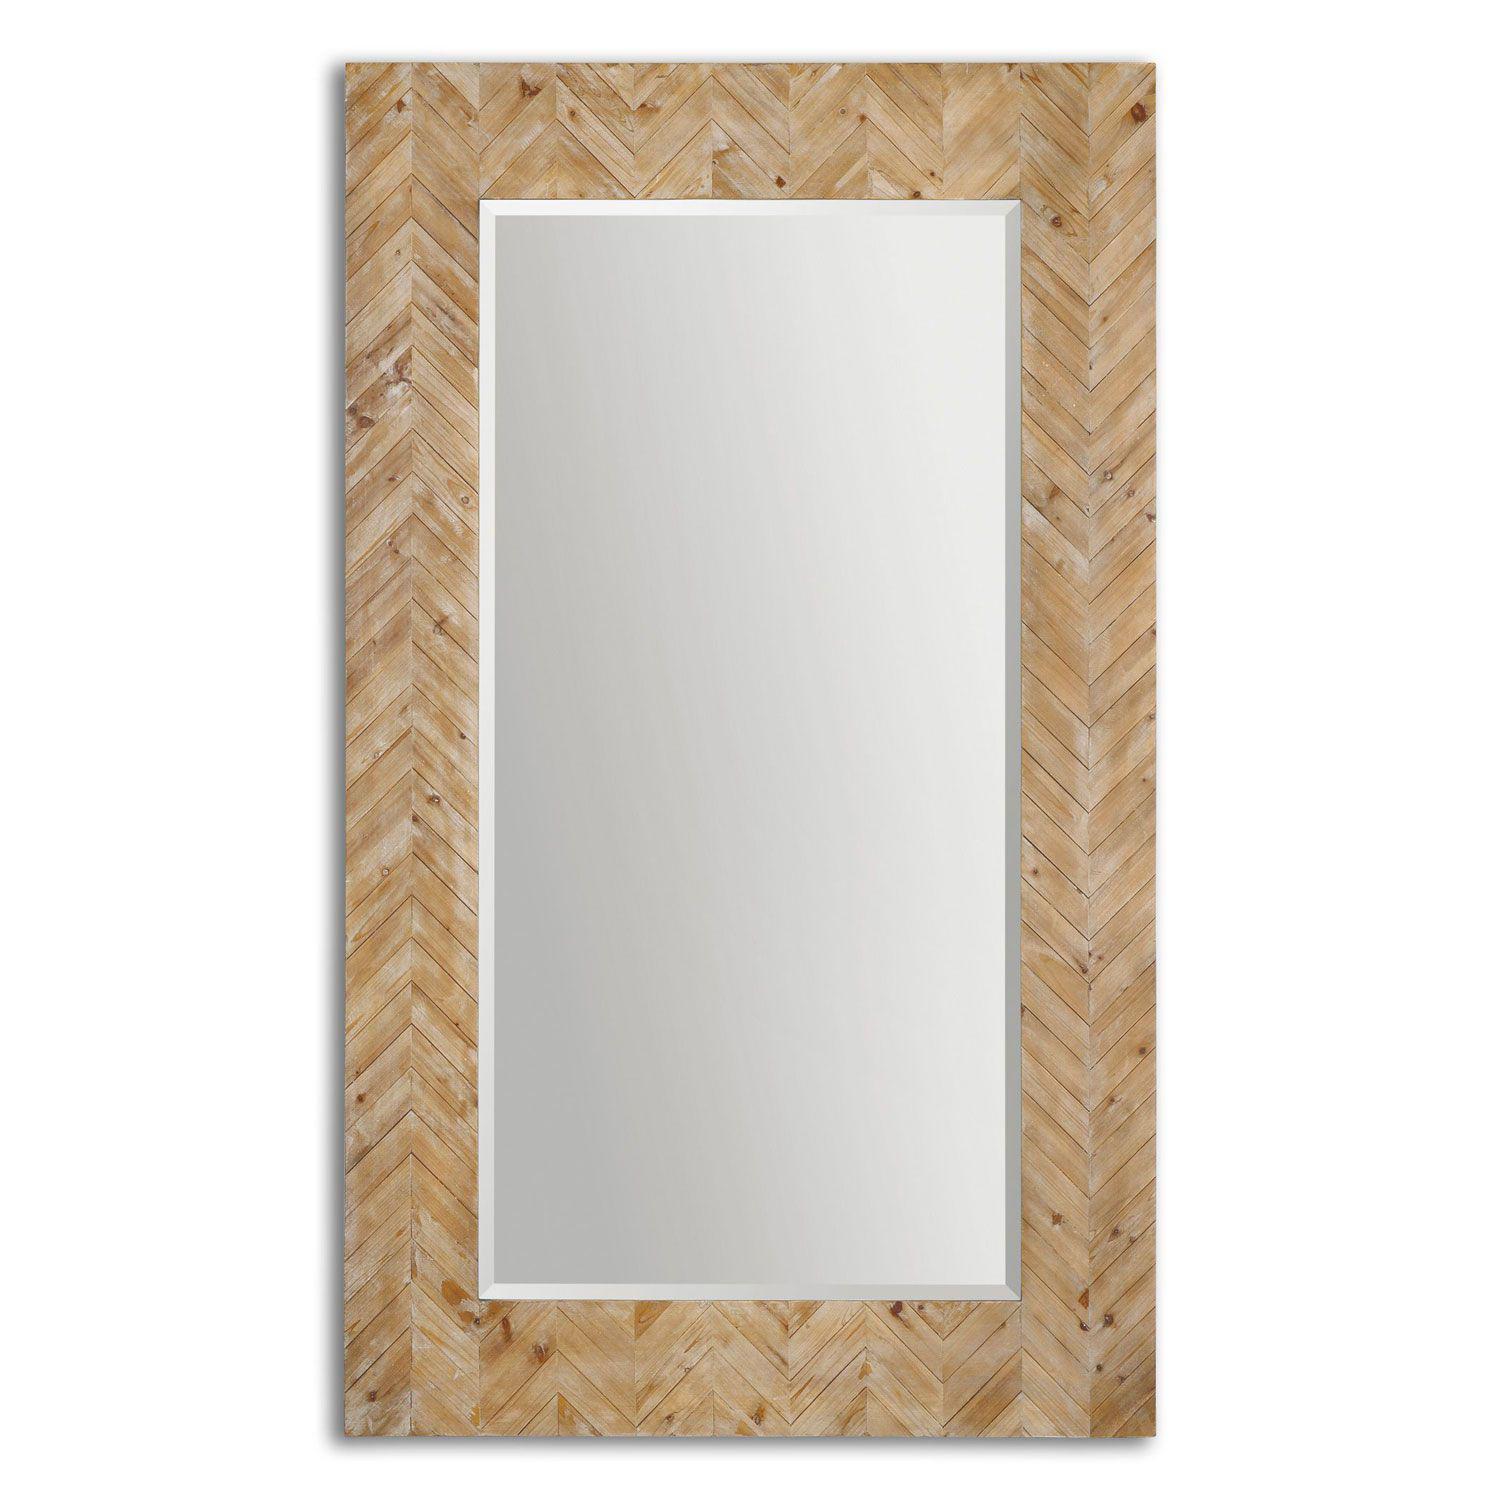 آینه دیواری با قاب چوبی (m24833)|ایده ها